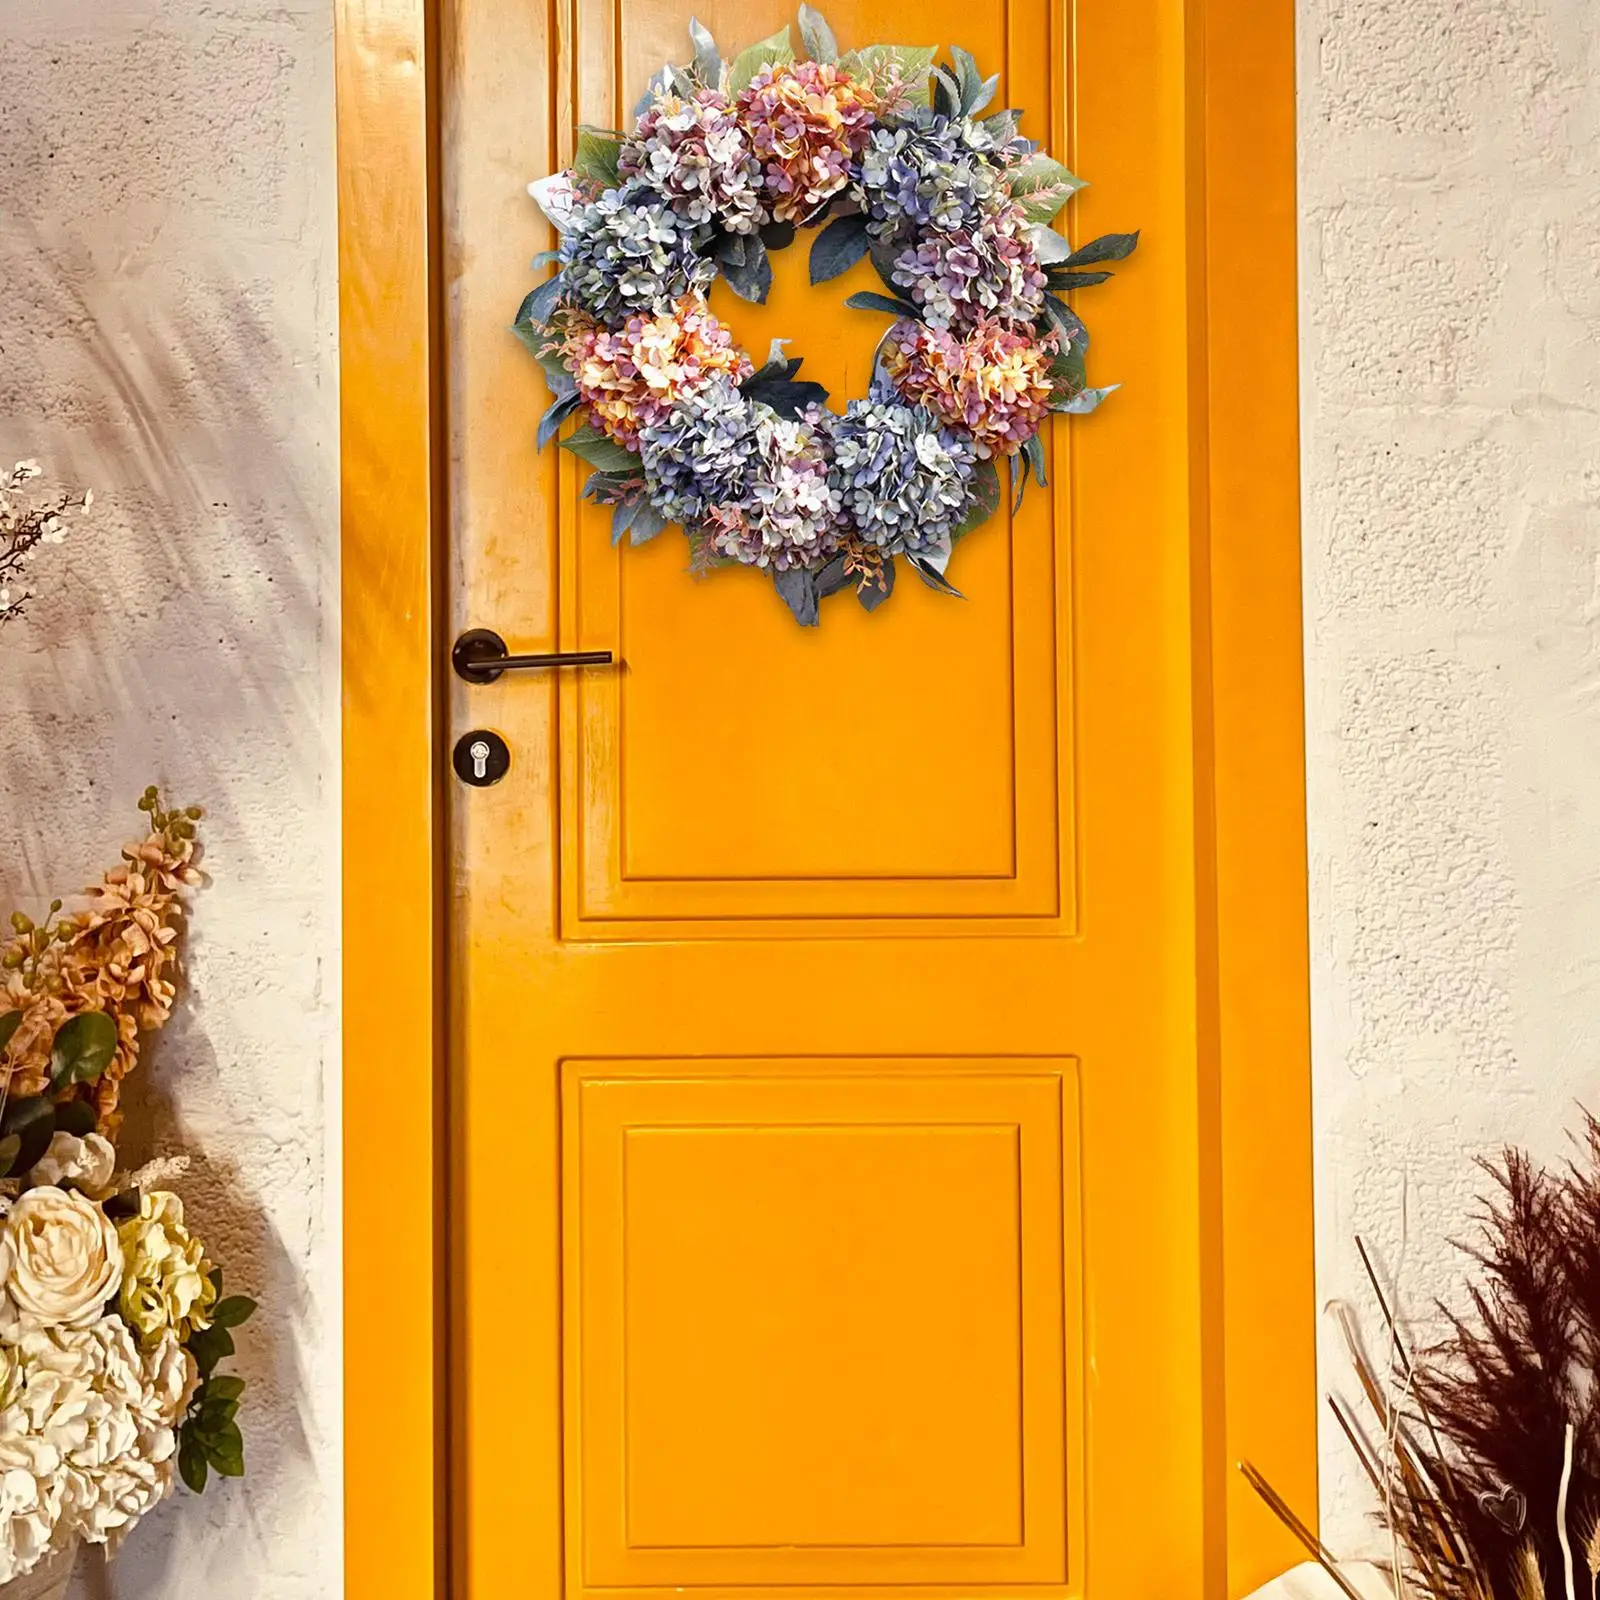  Winter  Colorful Hydrangea Flower for Front Door Floral Door  Decor